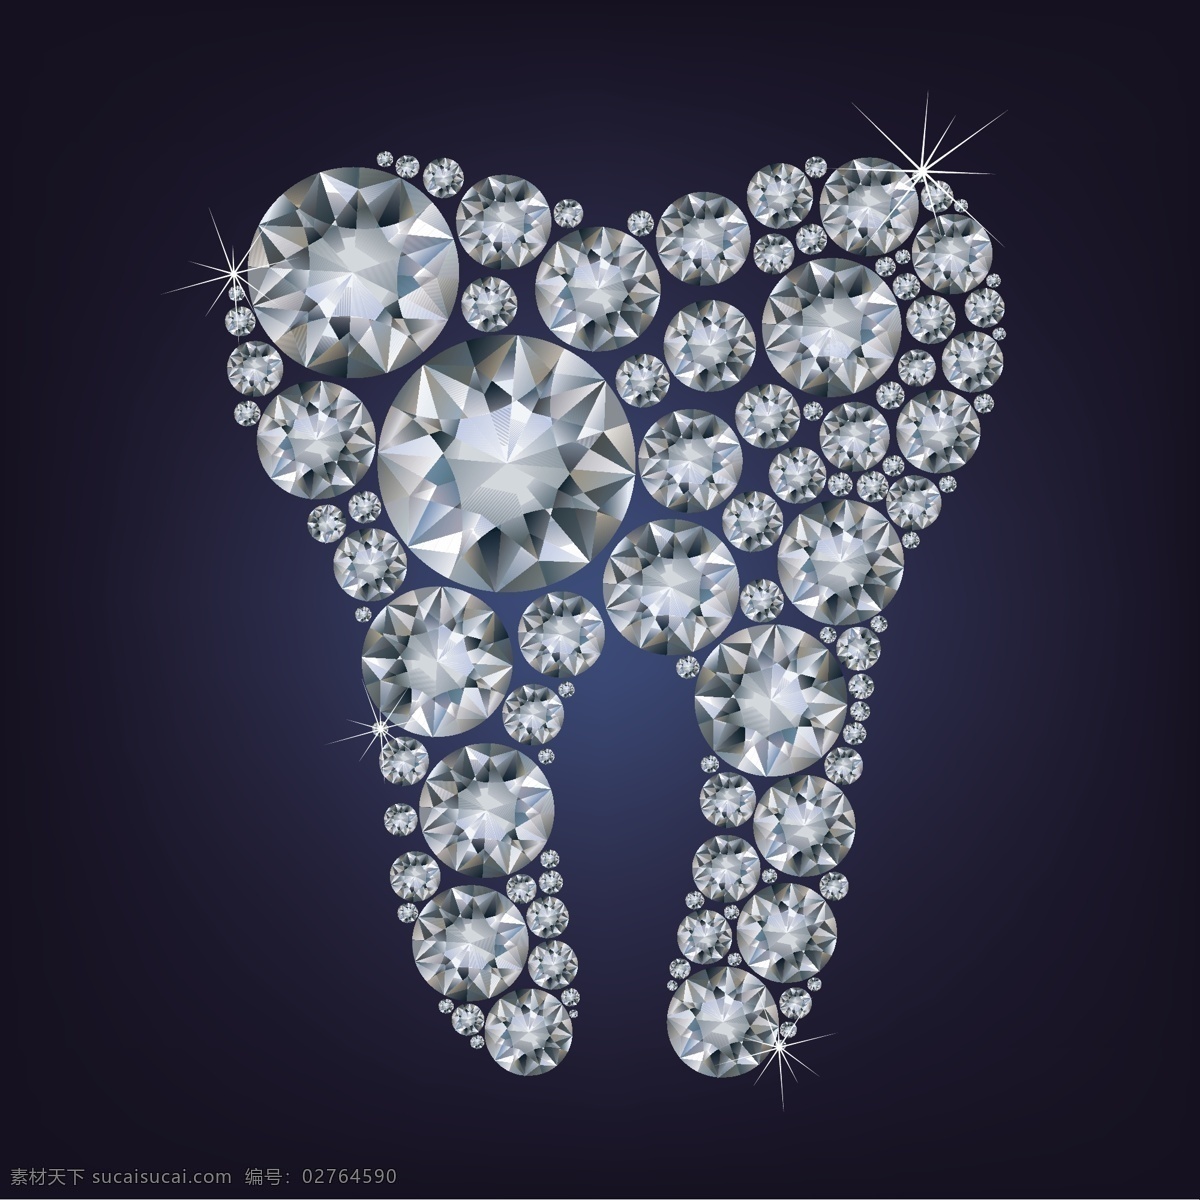 钻石 婚戒 项链 首饰 牙齿 精美钻石 珠宝 光亮 钻石广告 矢量素材 生活用品 生活百科